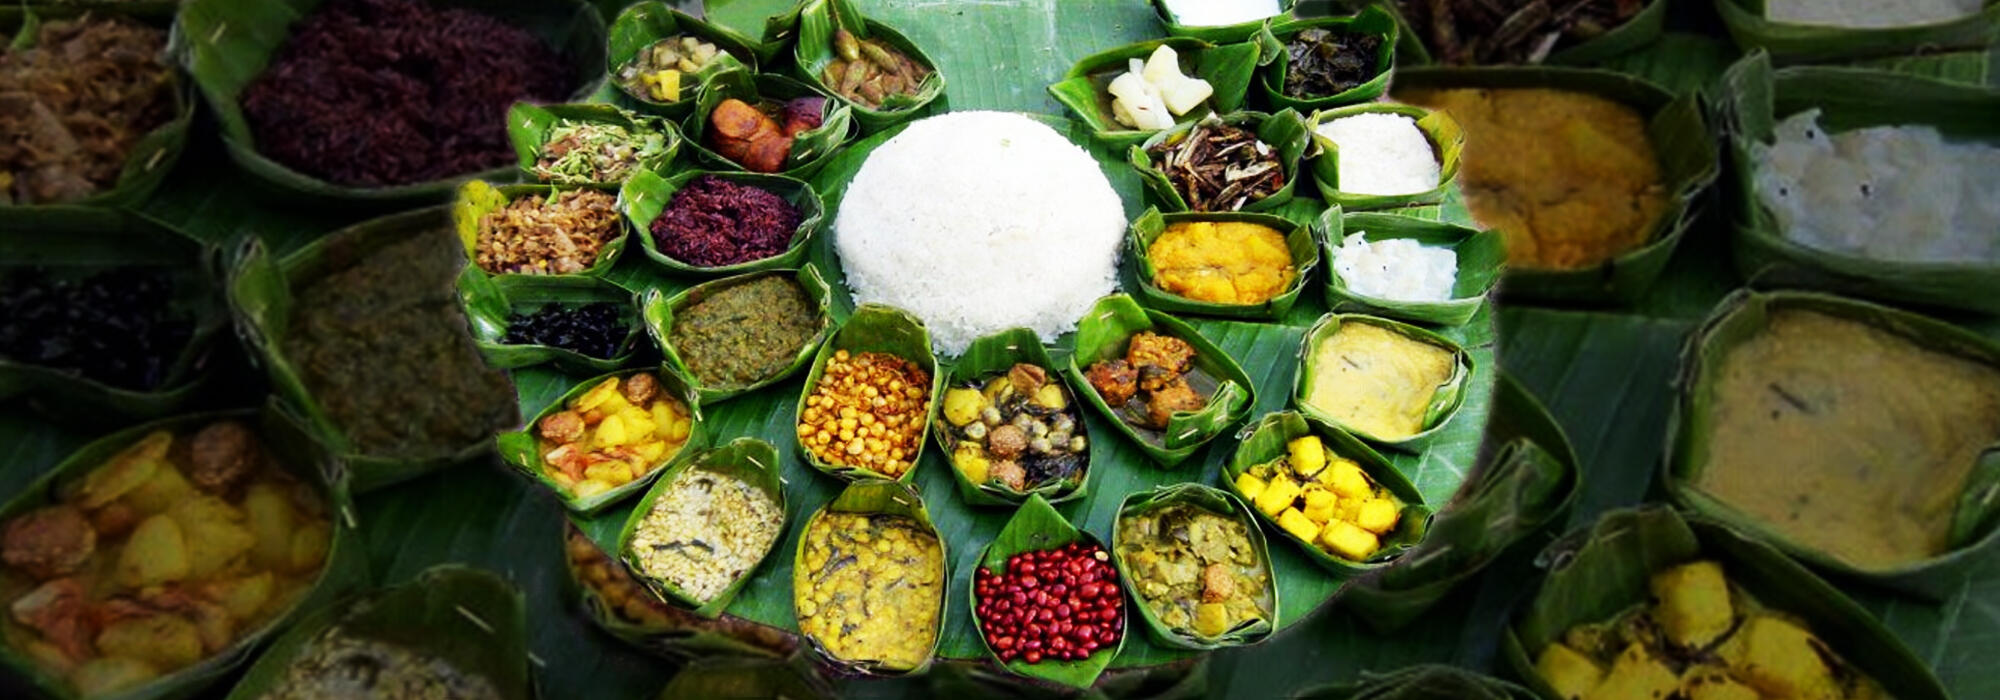 Manipuri food